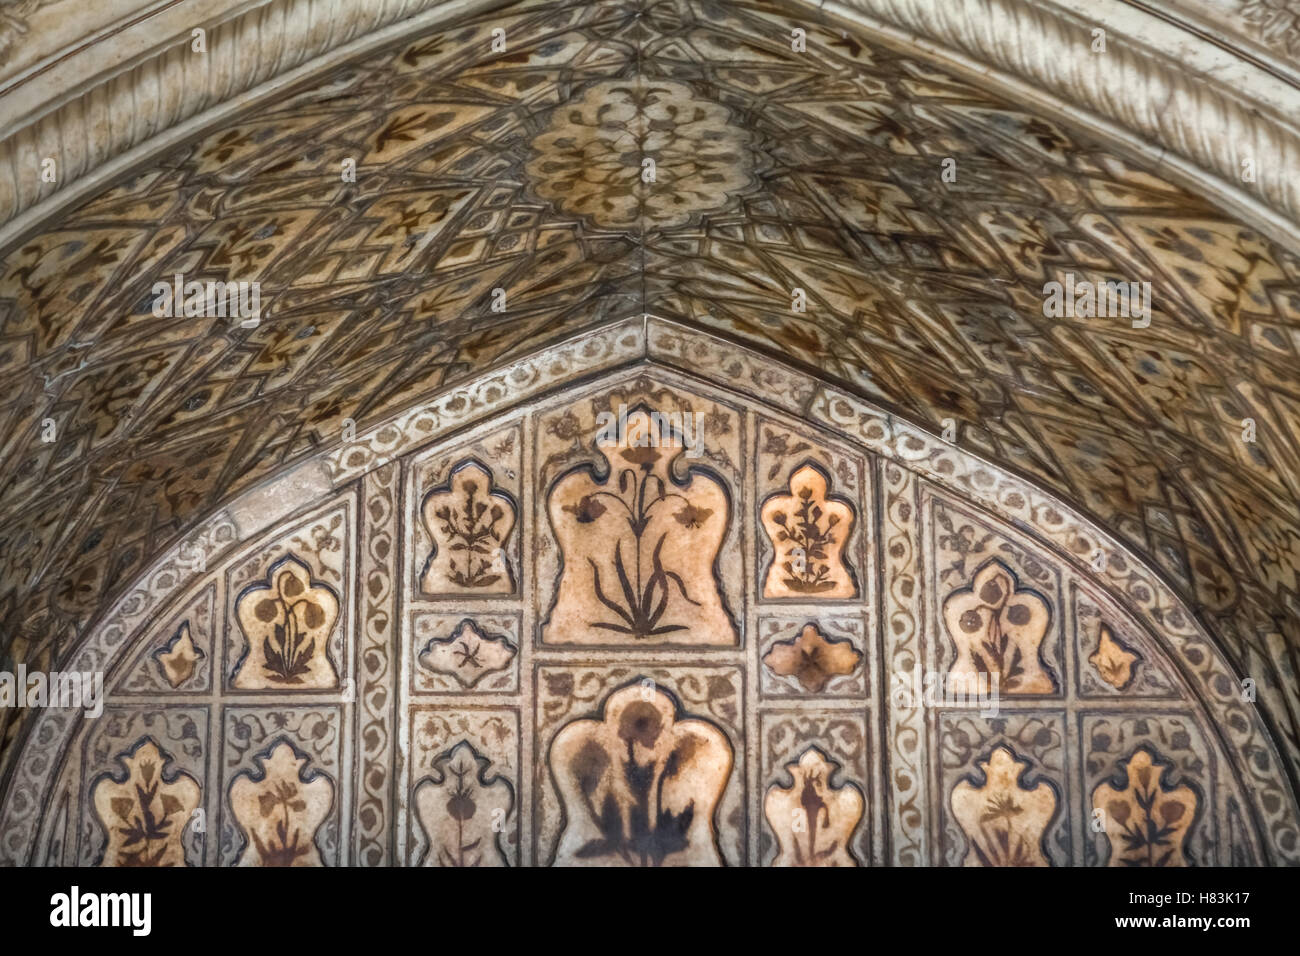 Soffitti in marmo bianco decorati con motivi floreali. Stile architettonico Mughal al Khas Mahal Pavillon, Forte Rosso, Agra, Uttar Pradesh, India. Foto Stock